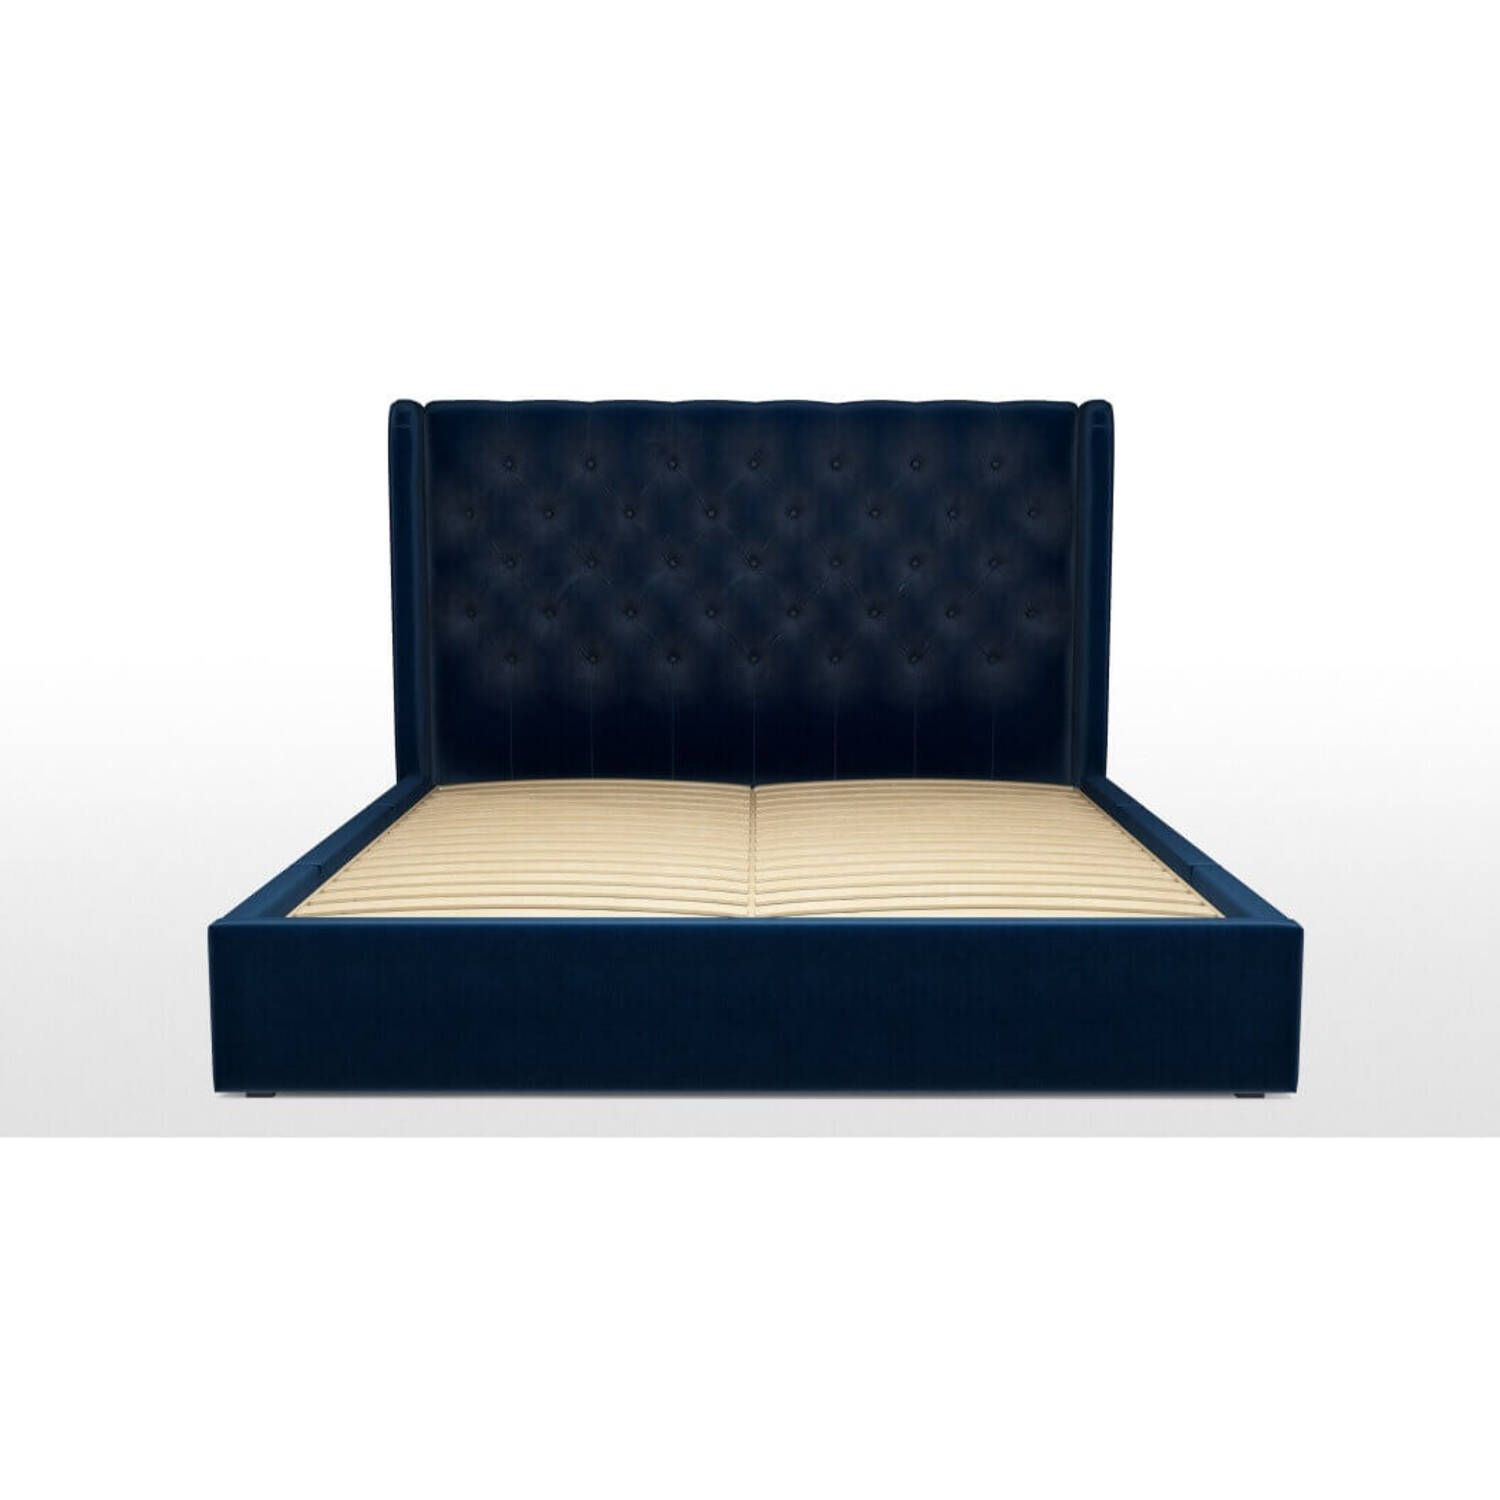 Кровать Romero с ящиками для хранения, синяя